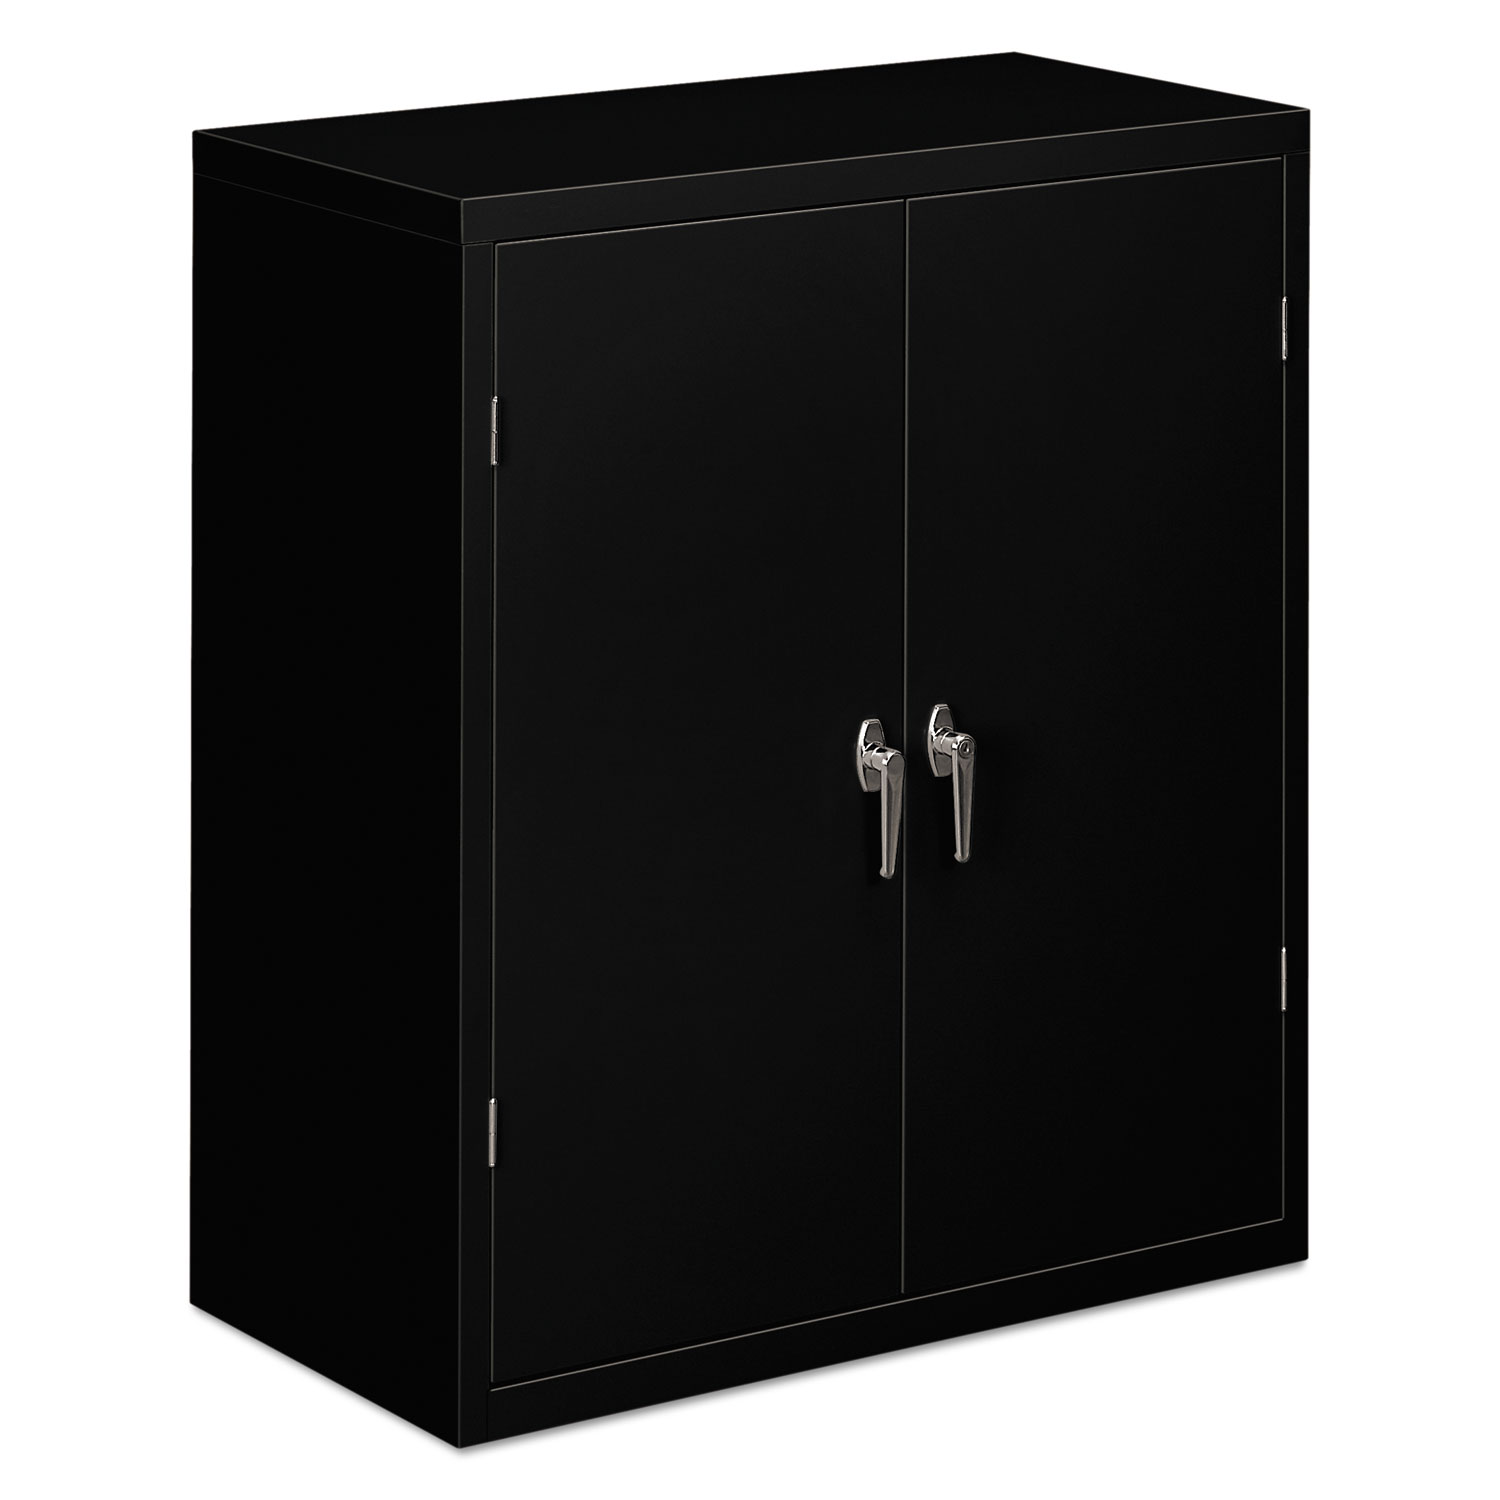  HON HSC1842.L.P Assembled Storage Cabinet, 36w x 18 1/8d x 41 3/4h, Black (HONSC1842P) 